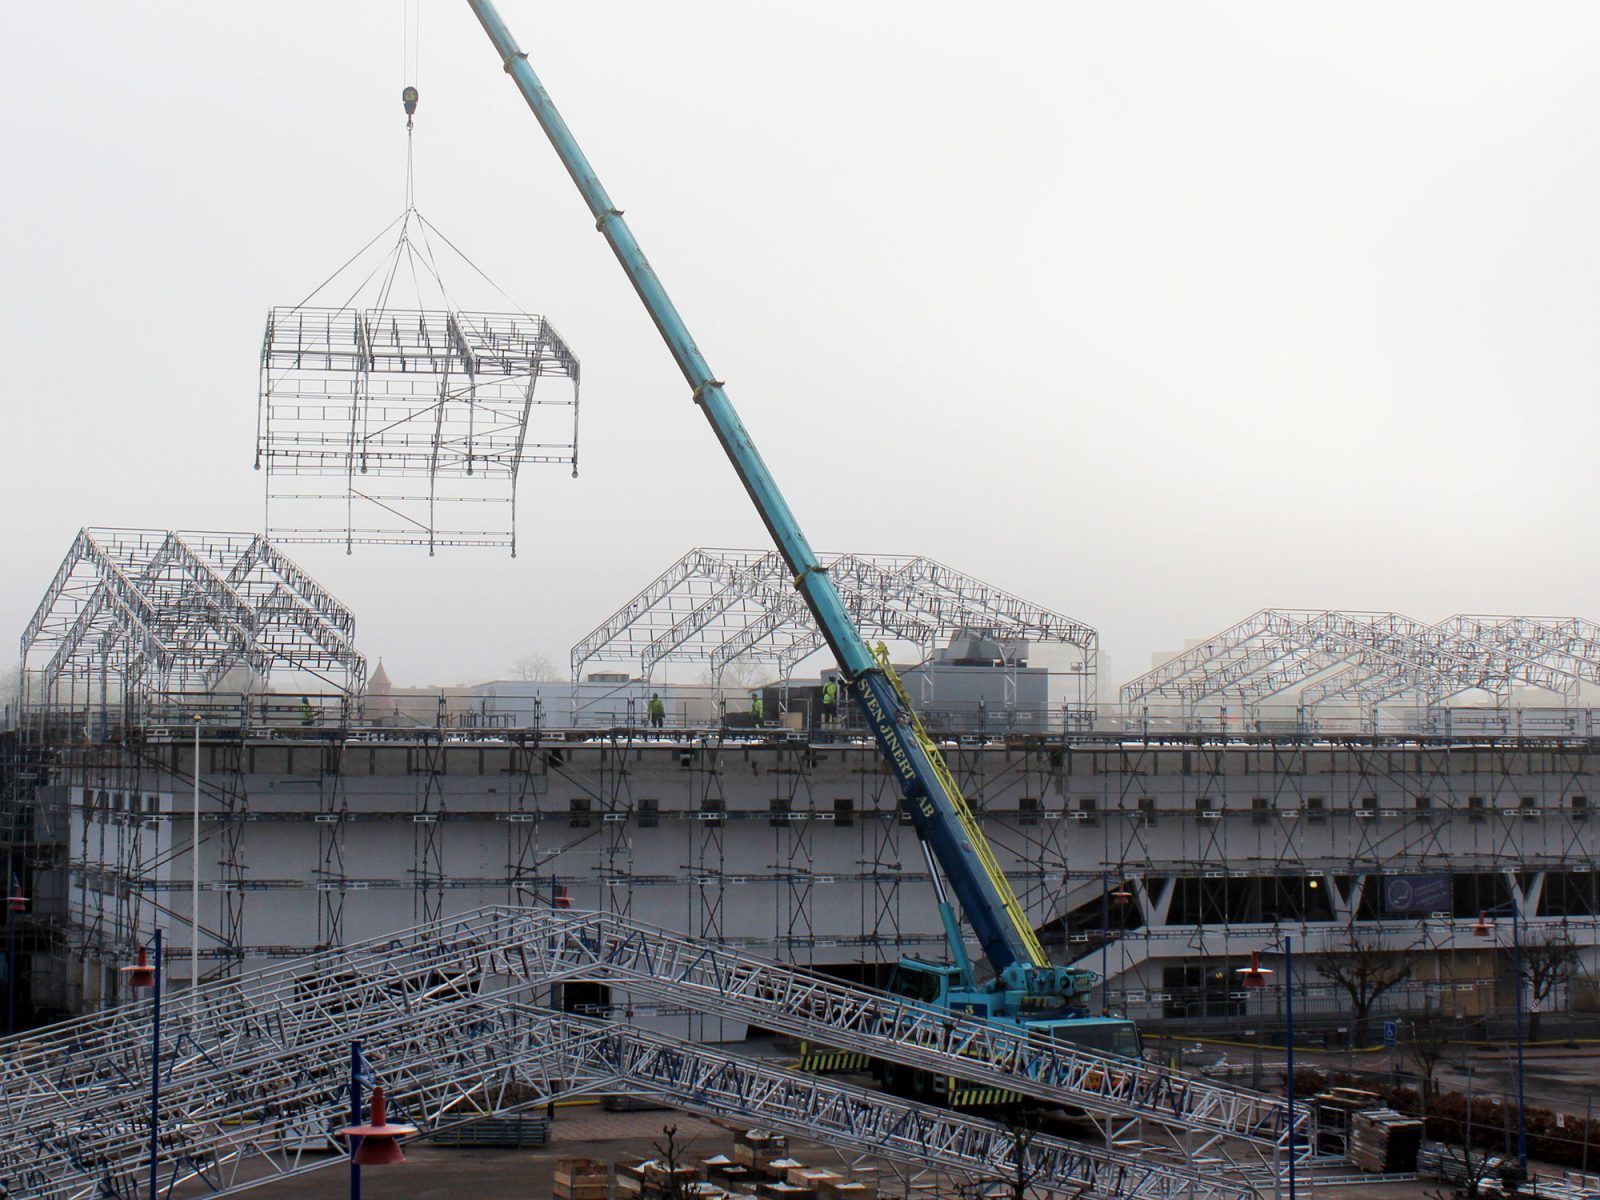 Översiktsbild visar en enorm byggarbetsplats, en stor kran lyfter upp byggställningar på ett tak.